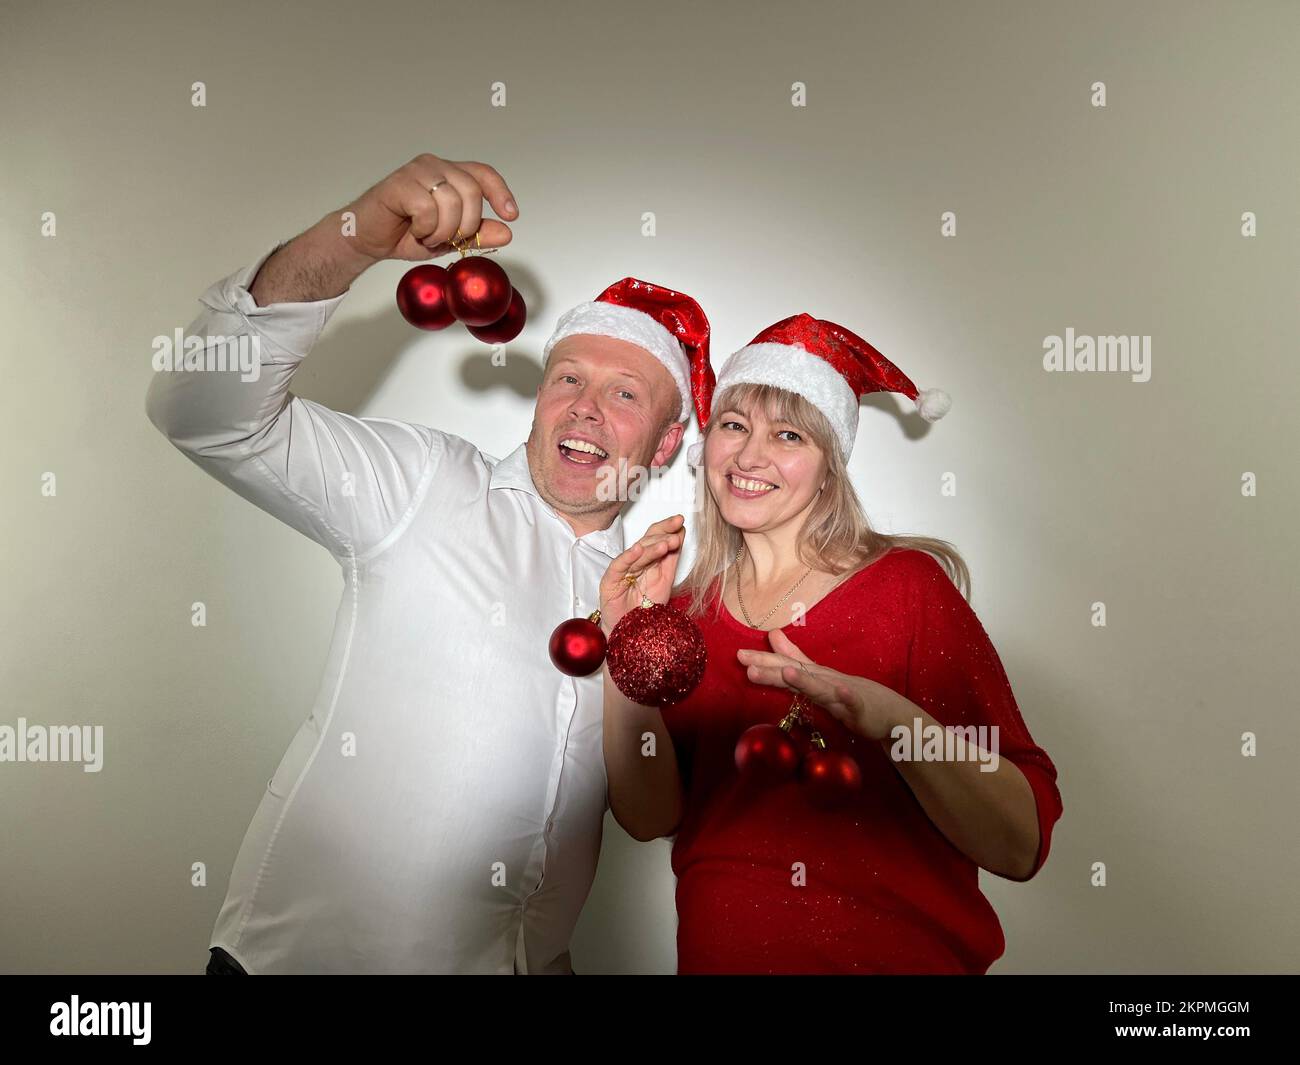 Partyeinladung Neujahr und Weihnachtsmann und -Frau Erwachsene tanzen in den Händen mit Spielzeug, haben Weihnachtshüte auf dem Kopf und rote Bälle Ded Moroz Weihnachtsmann Schneemädchen Stockfoto